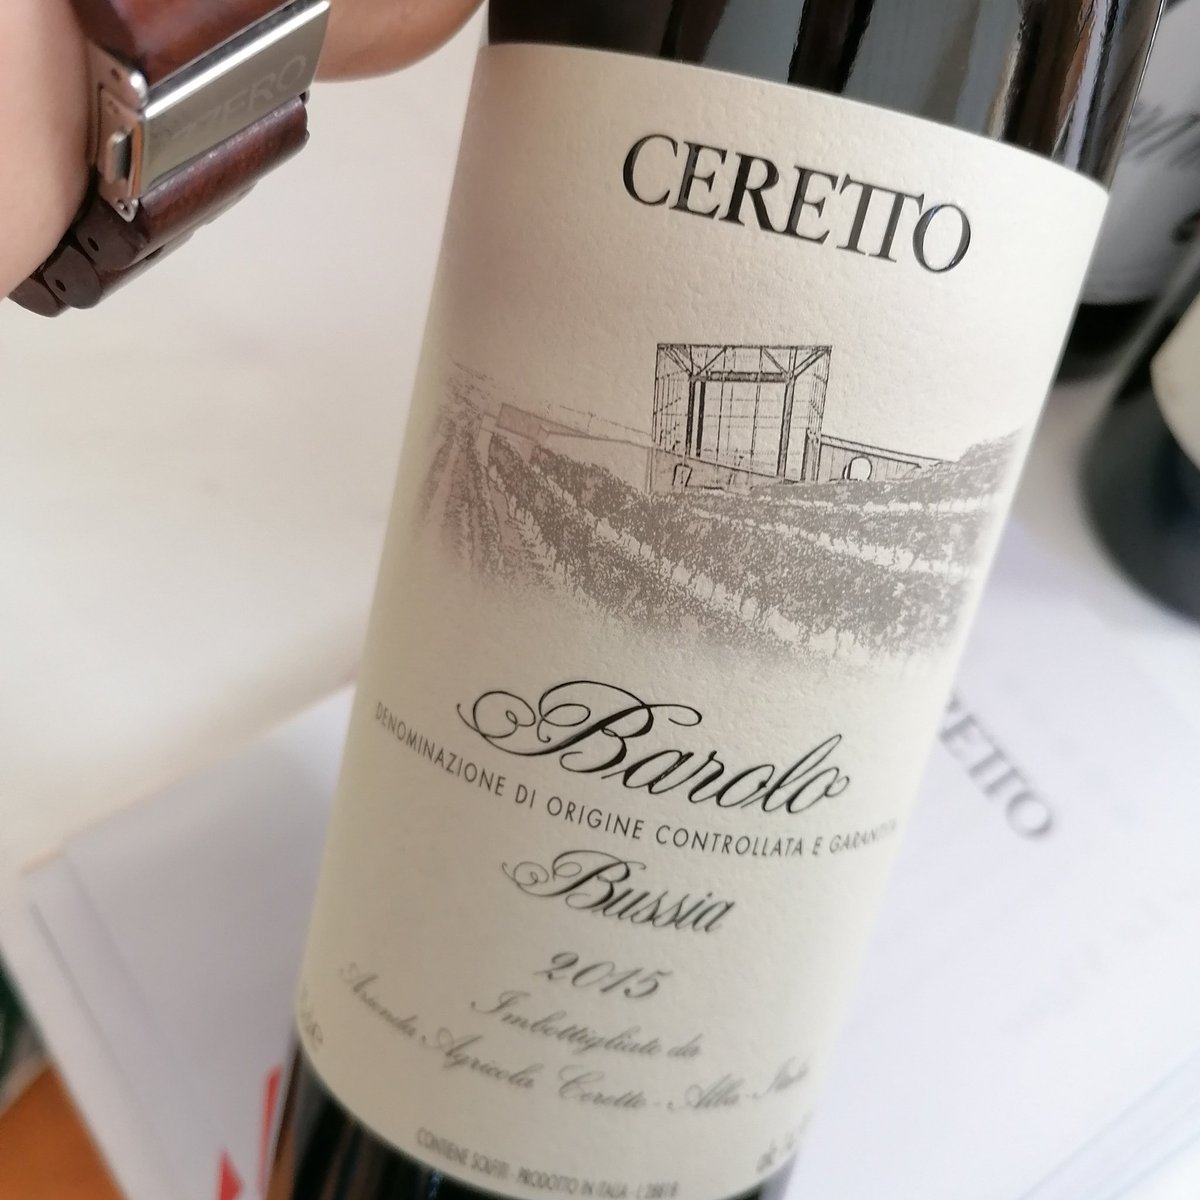 The new #Barolo released by #Ceretto #winery from #Bussia #cru :classic, elegant, intense even if still young
#piemonte #barolodocg #2015
---
(il nuovo Barolo di Ceretto:il cru Bussia che mancava,in stile classico, elegante e intenso seppur ancora giovane)
#EnoGenova #winetasting